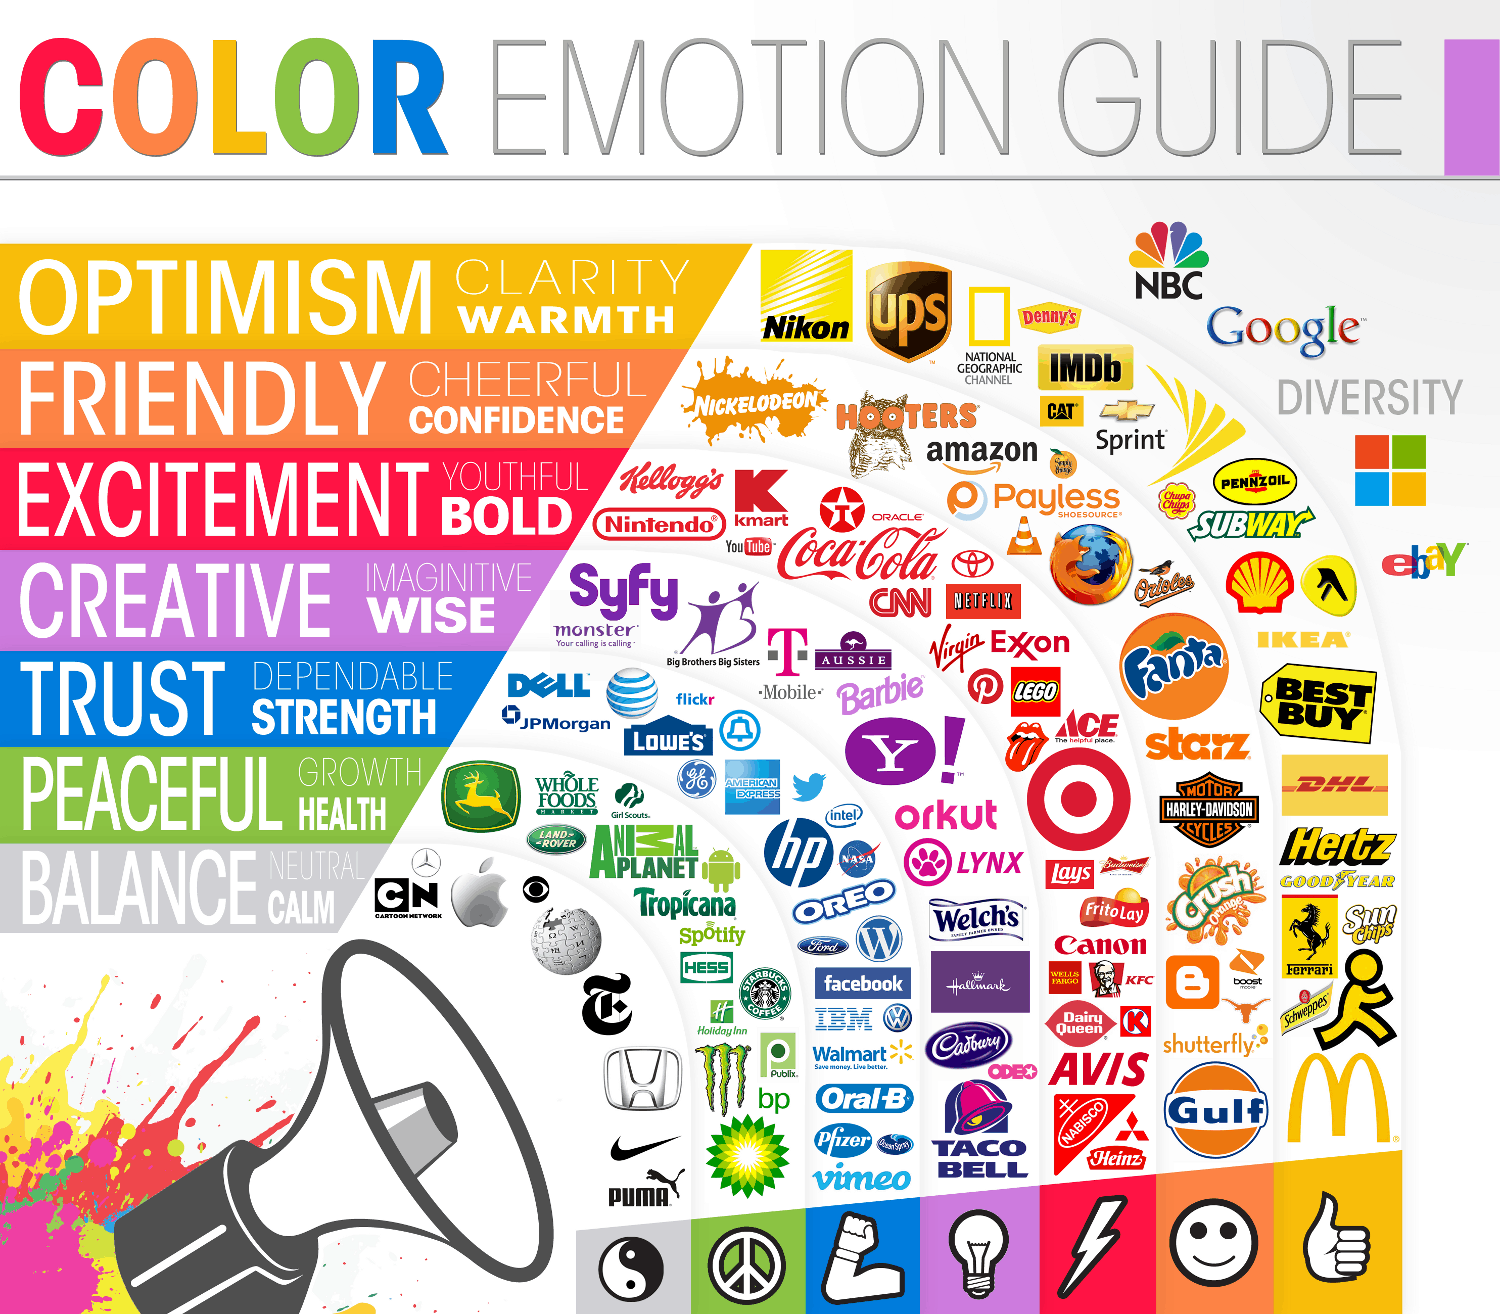 Color_Emotion_Guide22.png